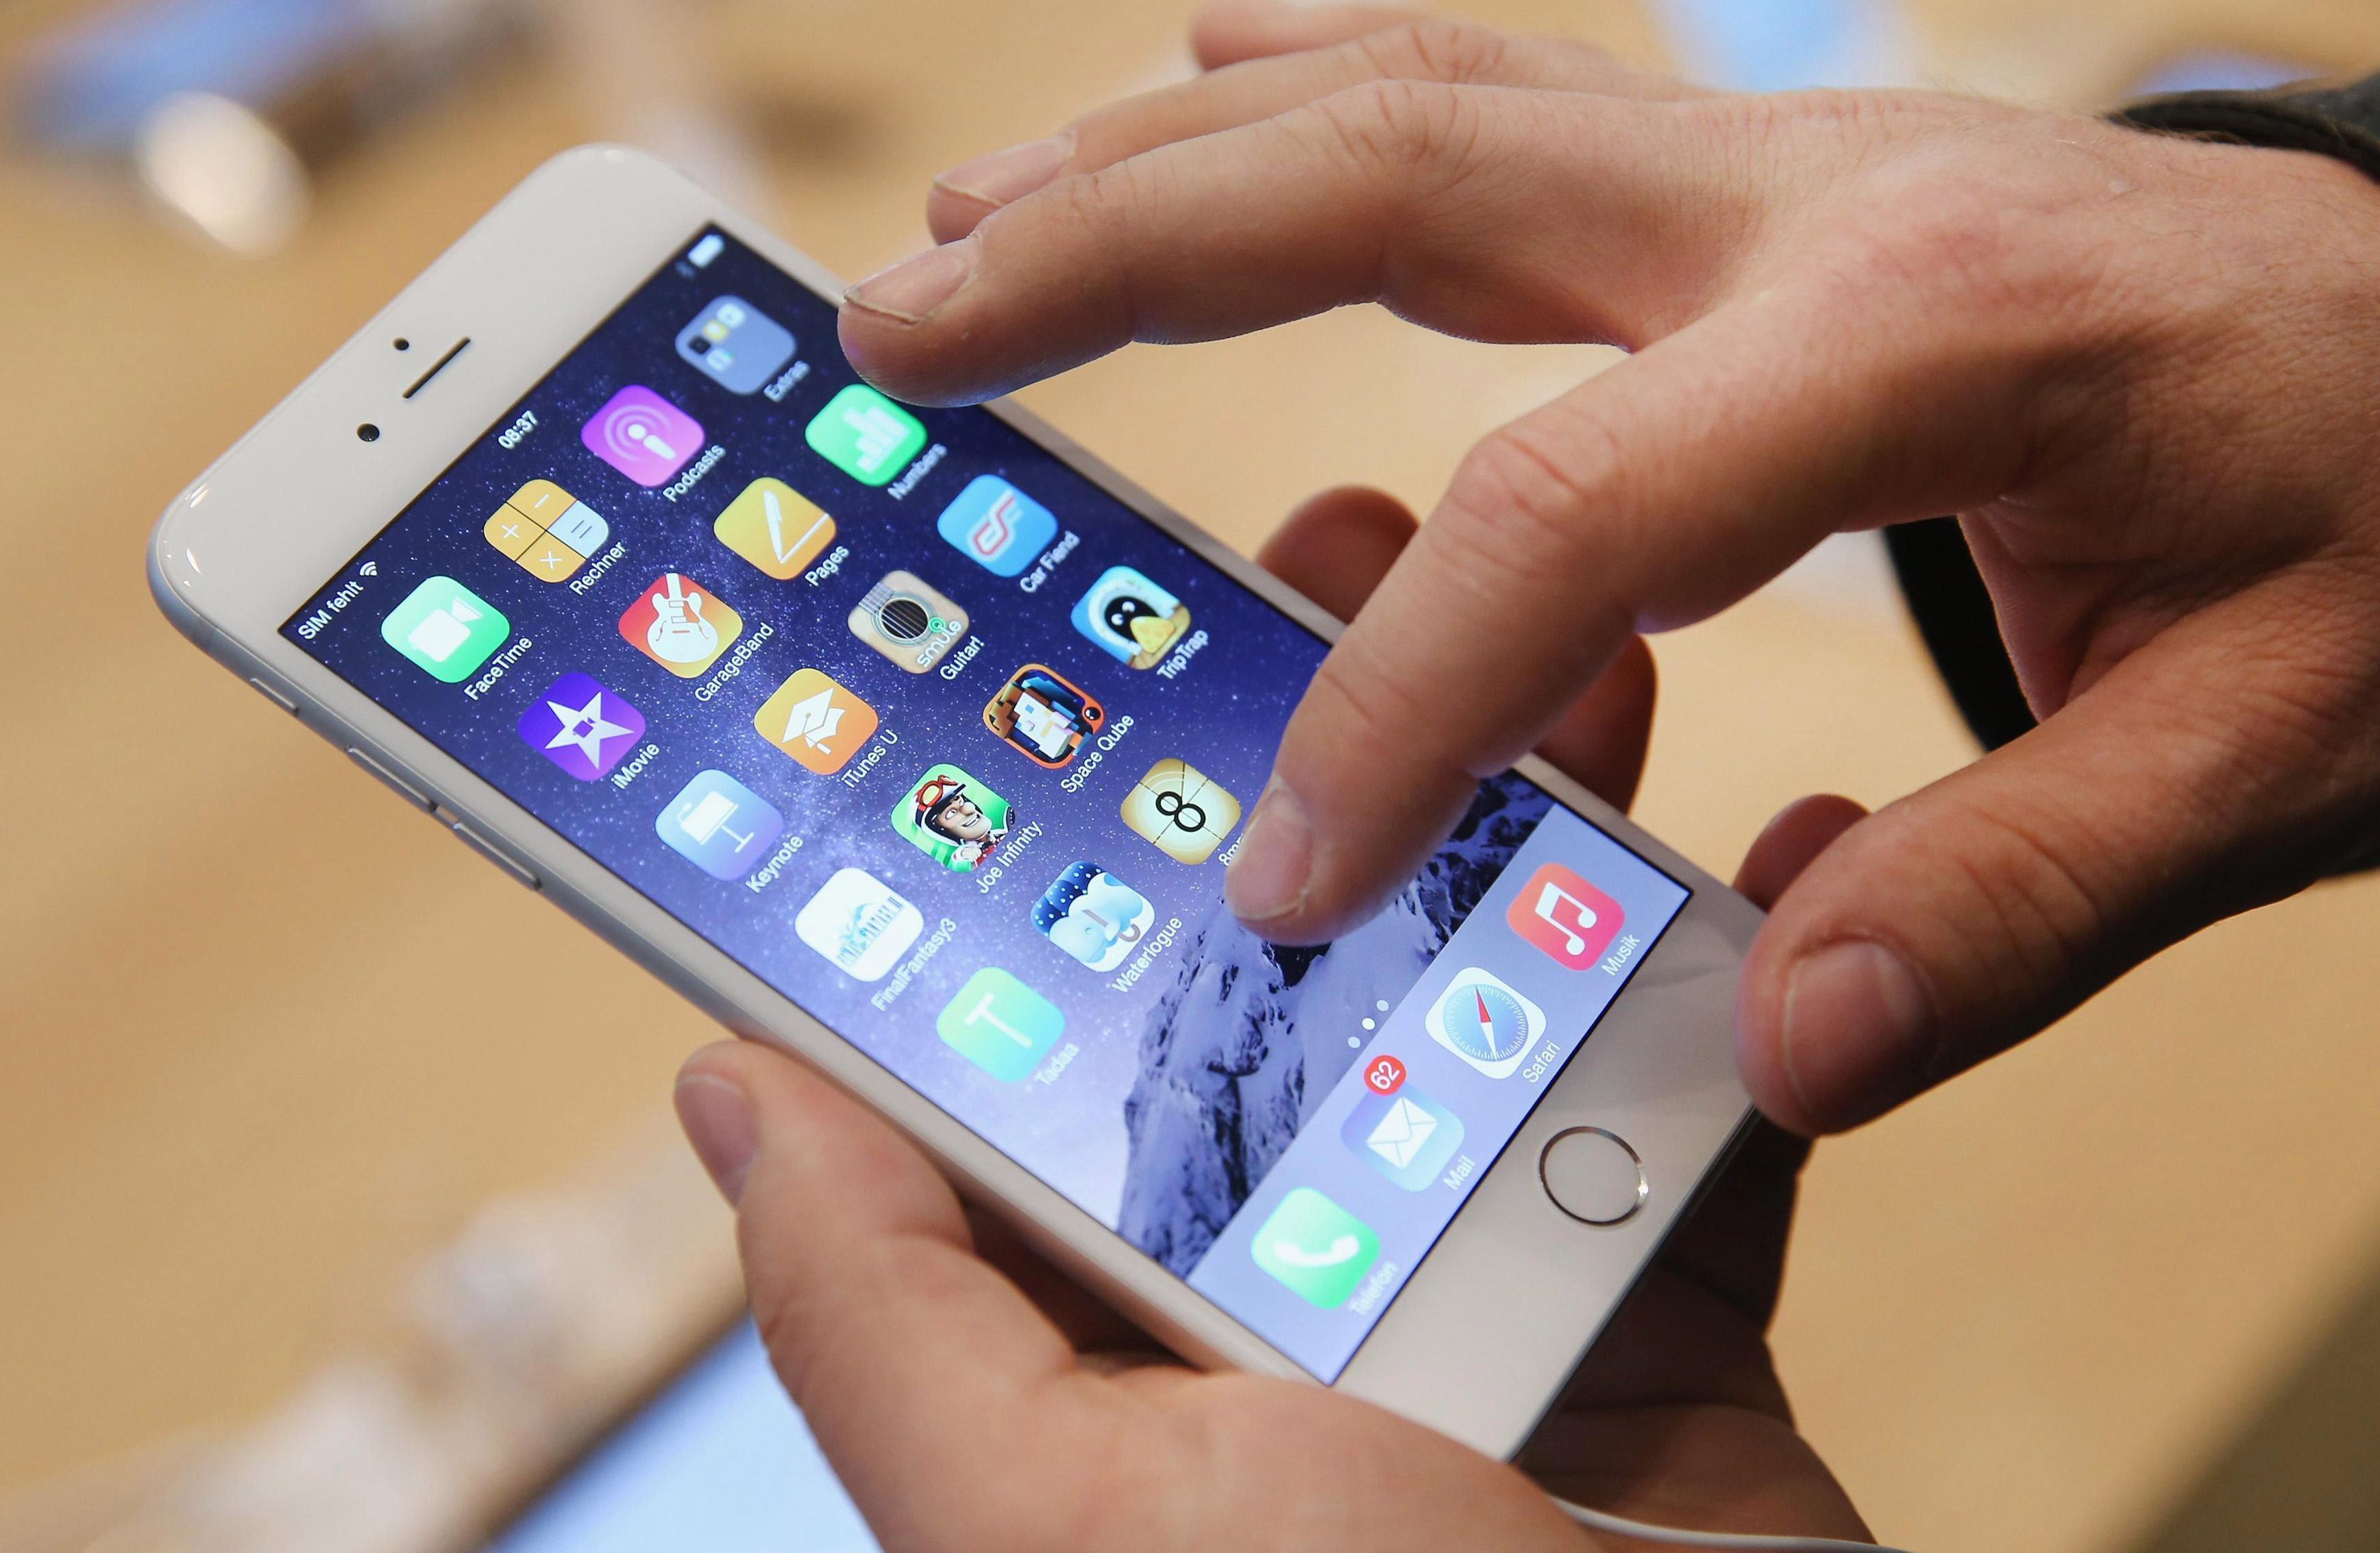  Apple        đã phải đối mặt với hành động pháp lý để họ công nhận rằng họ đã làm chậm iPhone cũ